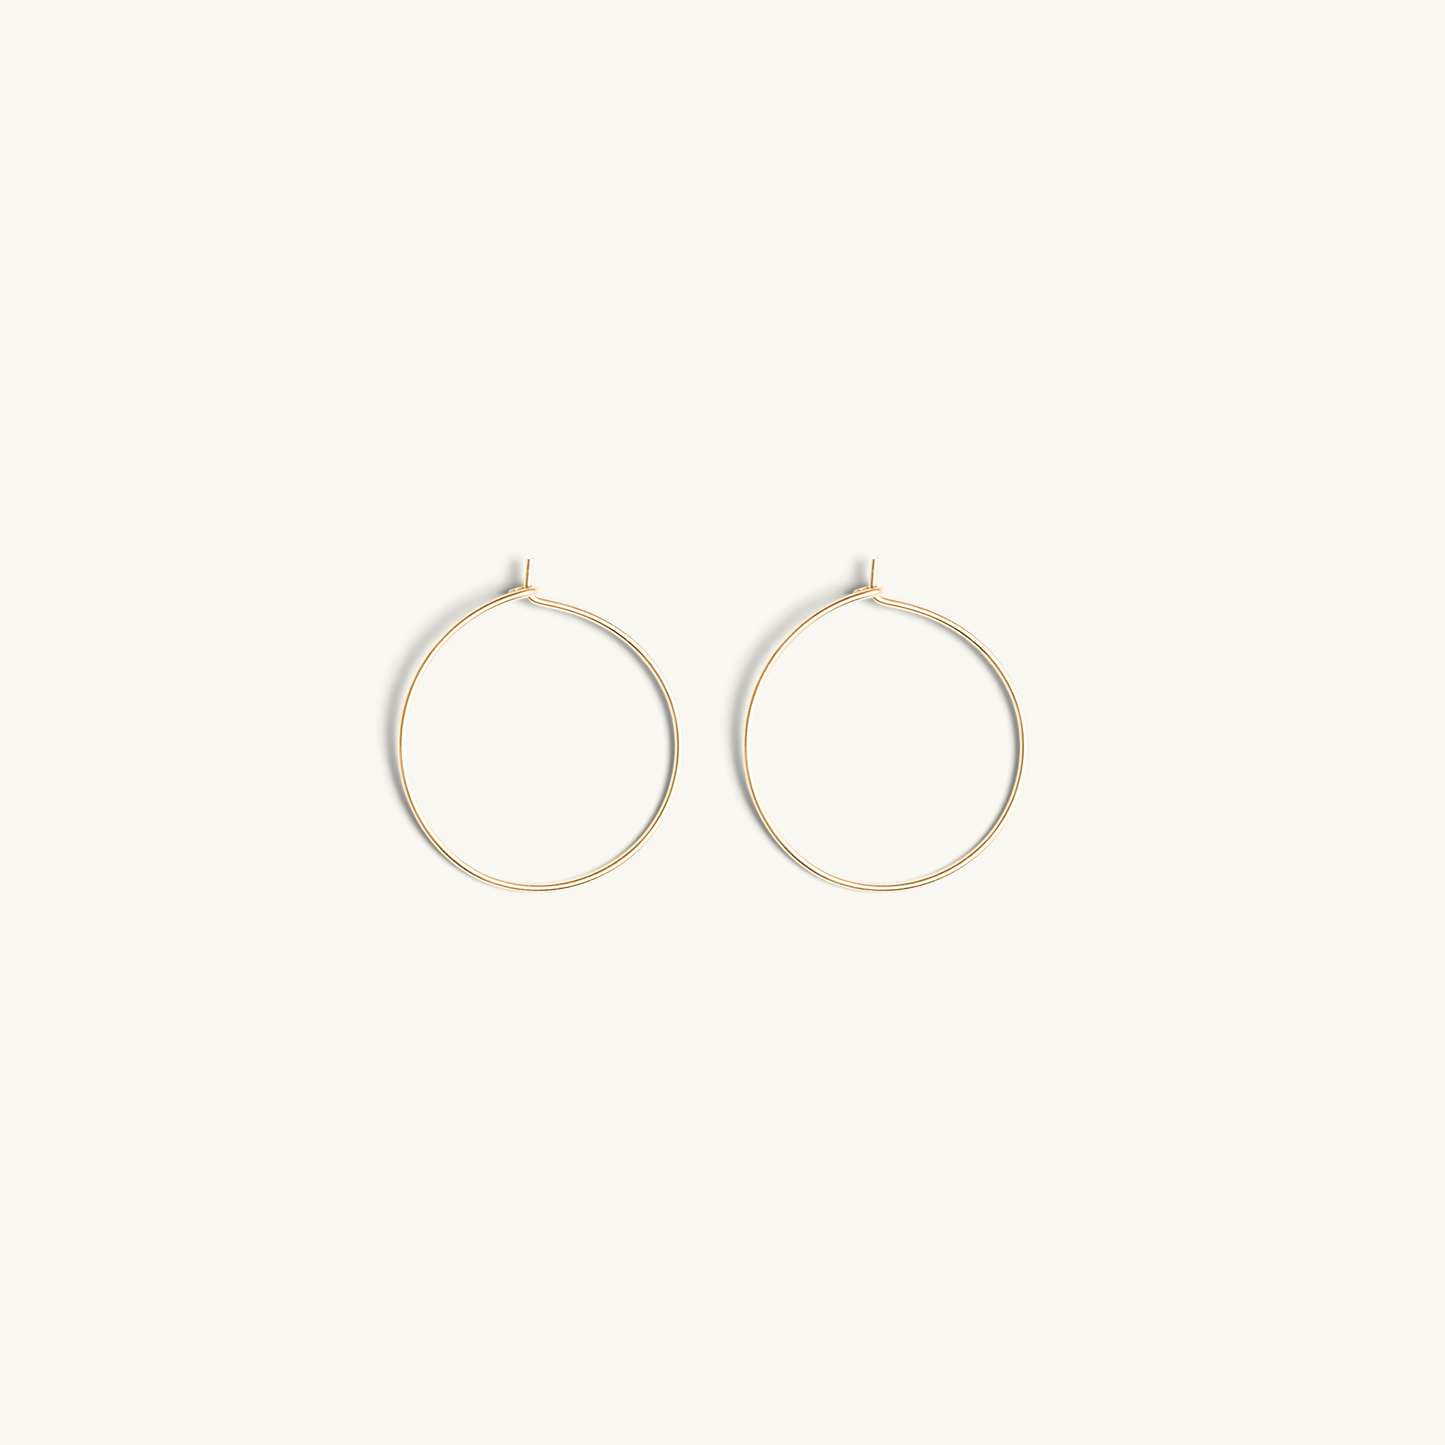 Gold Filled Wire Hoop Earrings (25mm)